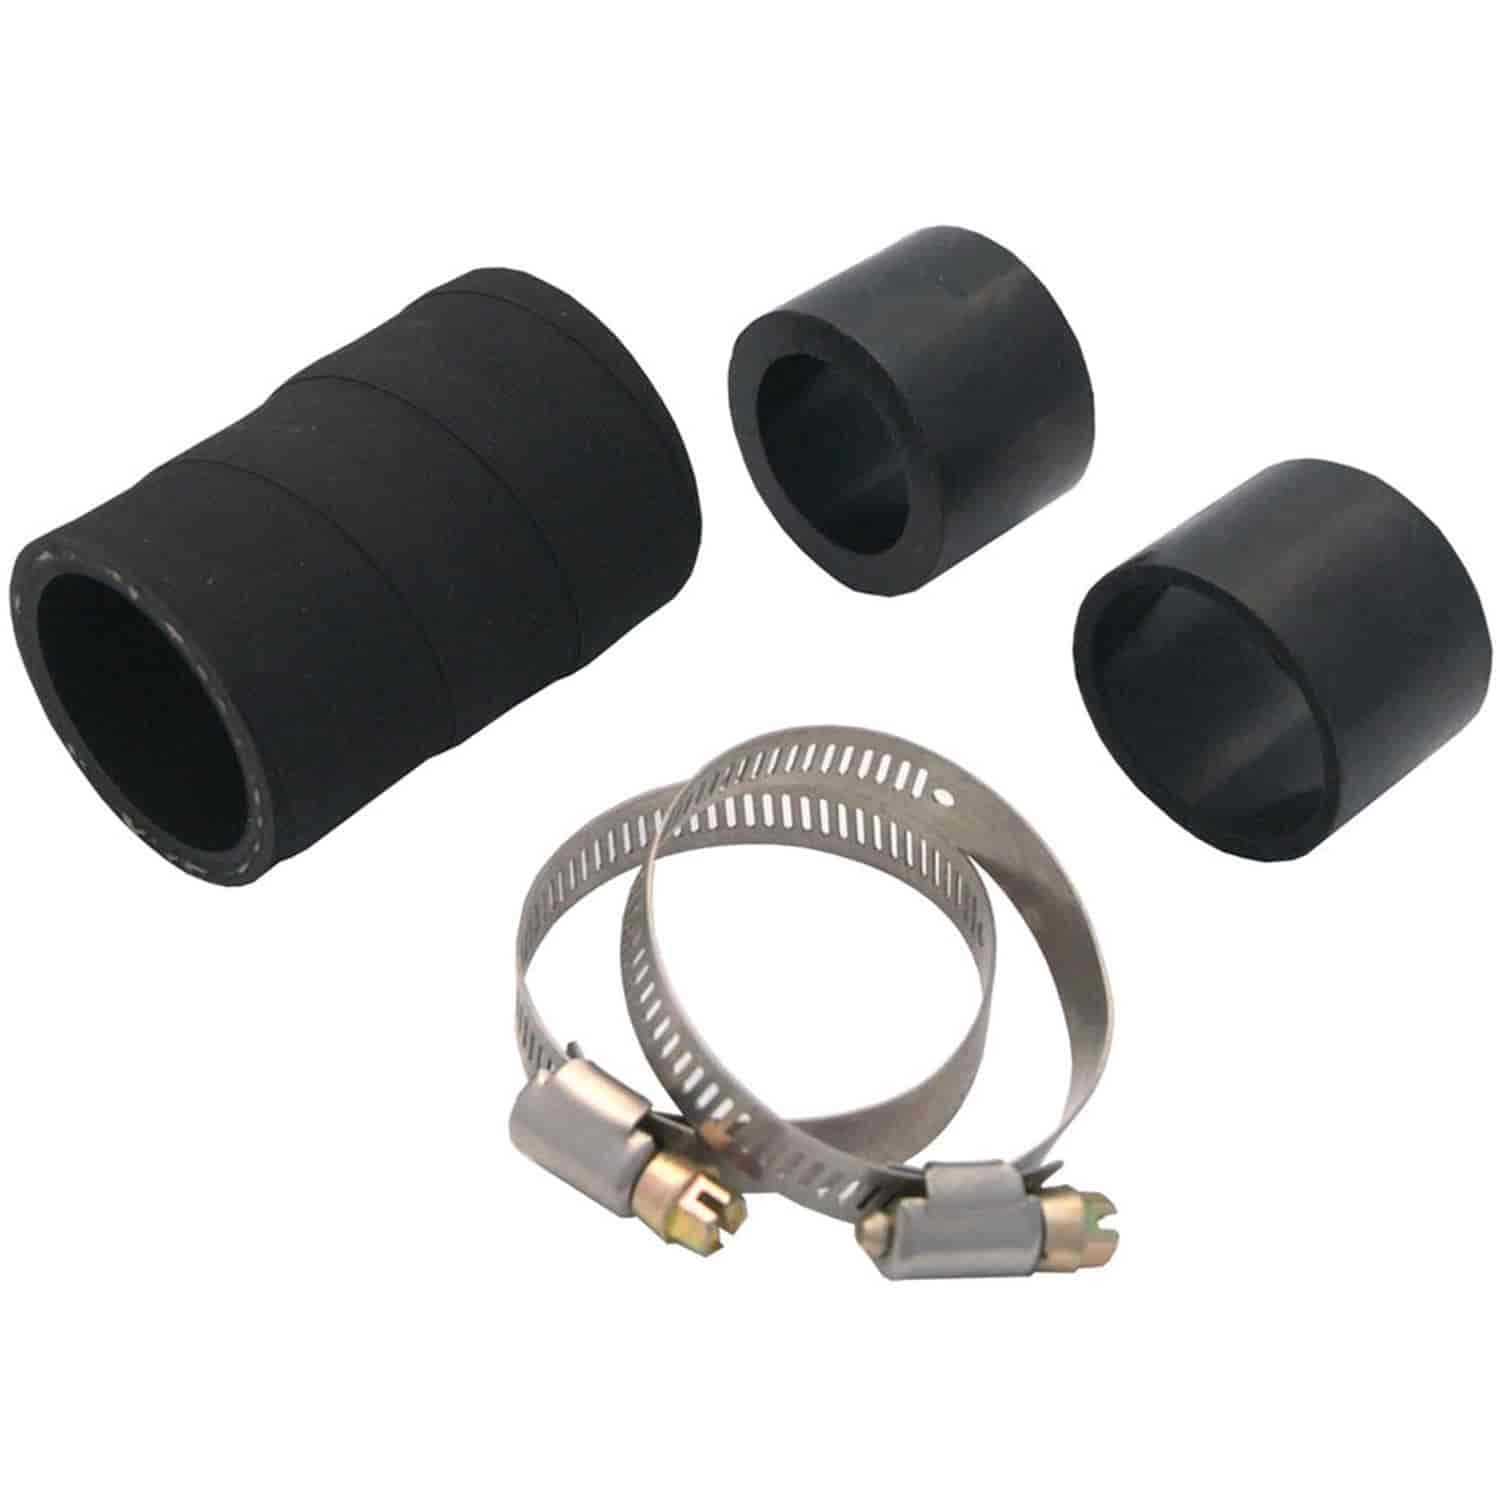 Magna Kool Radiator Hose Adapter Kit Kit Includes (1) 1-3/4" sleeve rubber hose